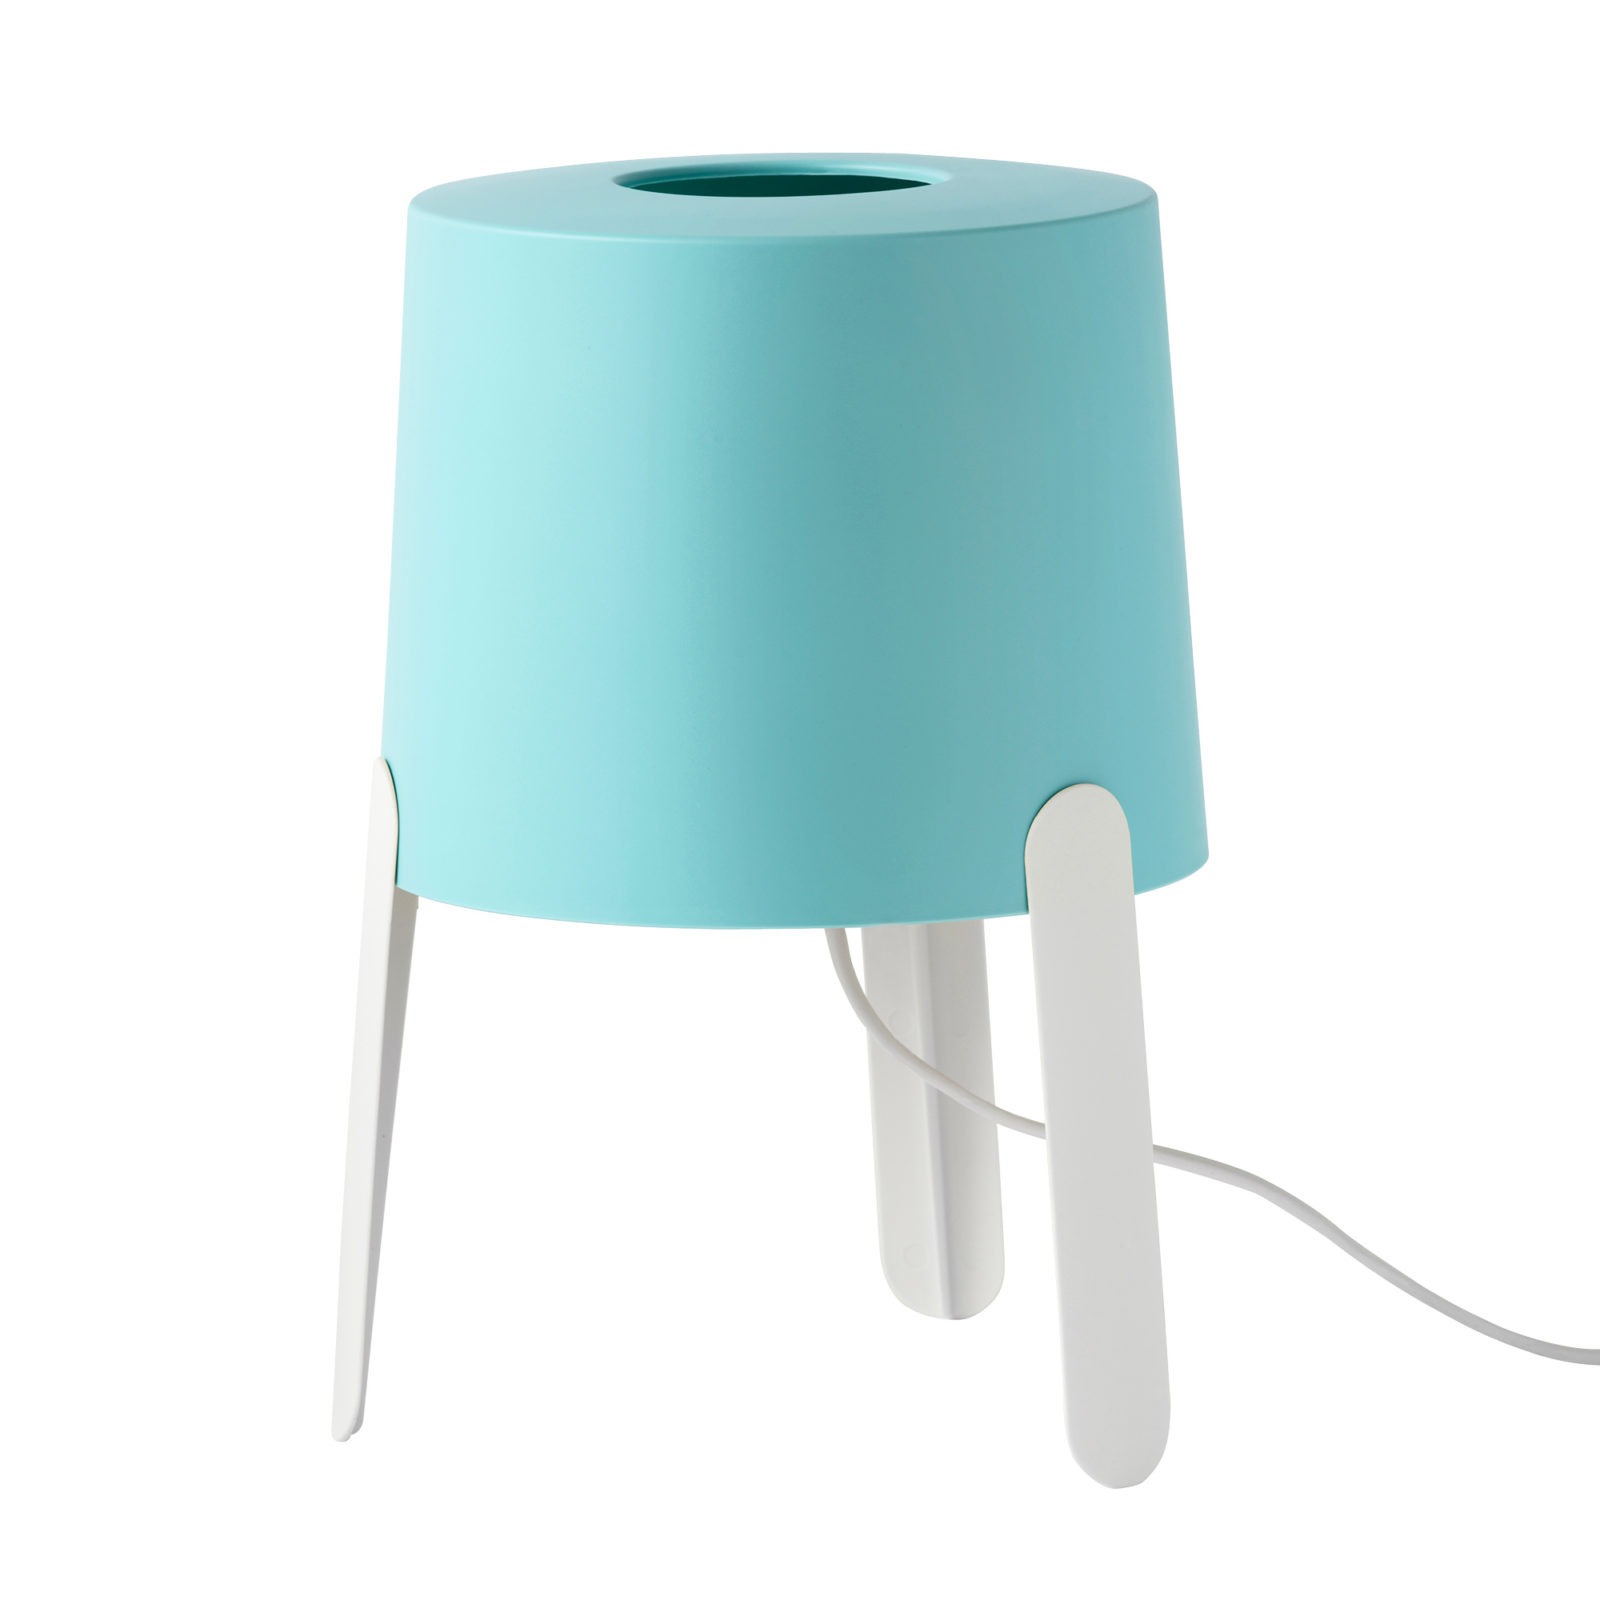 Lámpara de mesa de tres patas con pantalla azul claro.